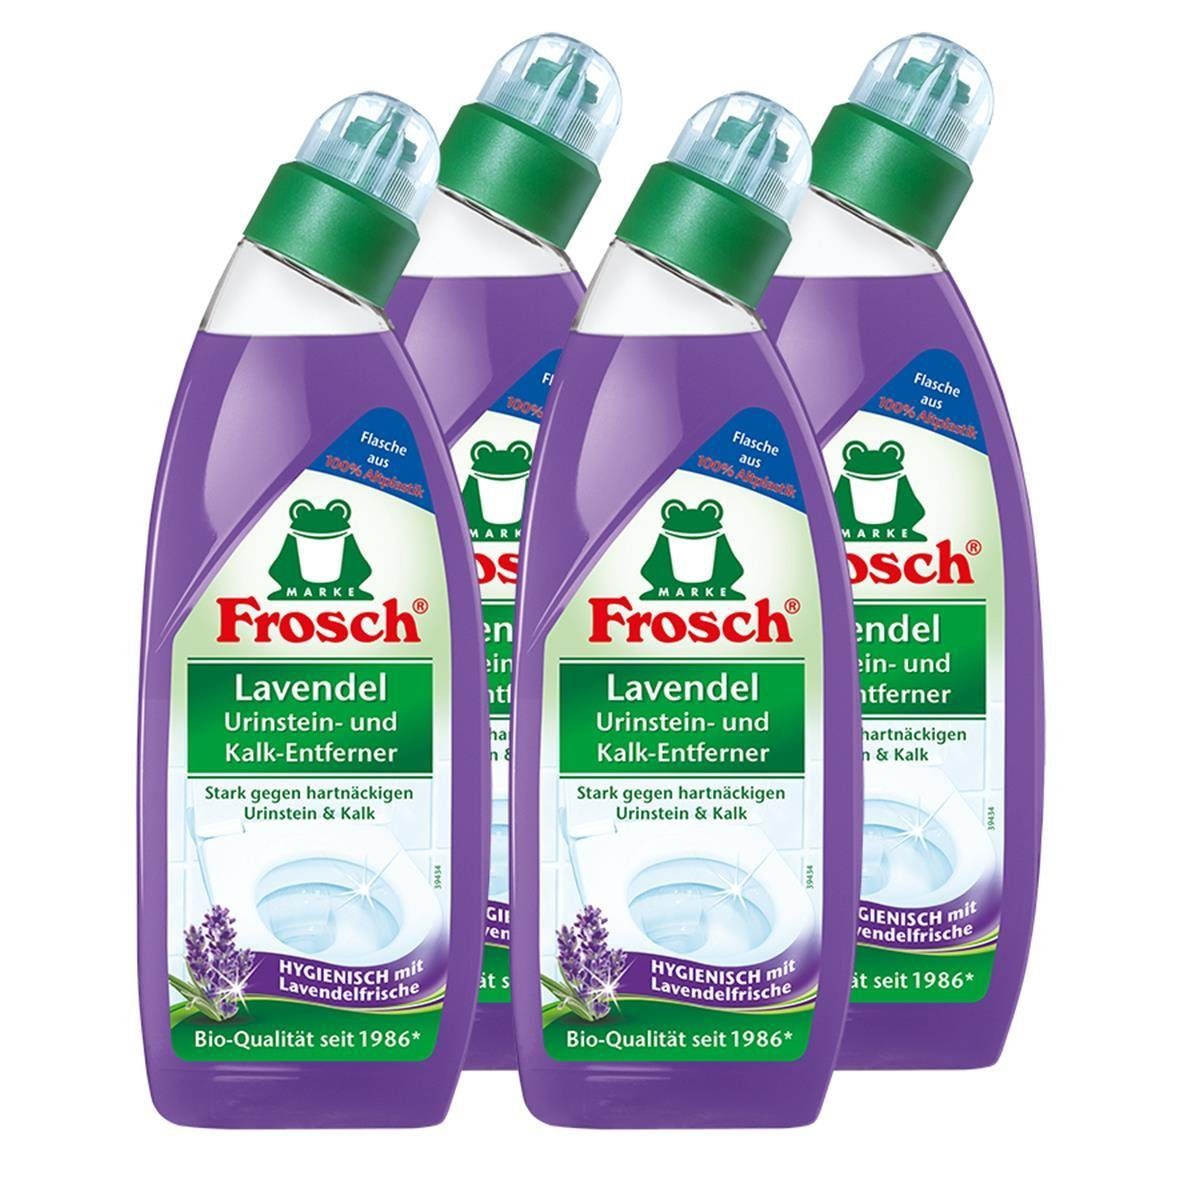 FROSCH 4x Frosch Lavendel Urinstein- und Kalk-Entferner 750 ml - Hygienisch  m WC-Reiniger